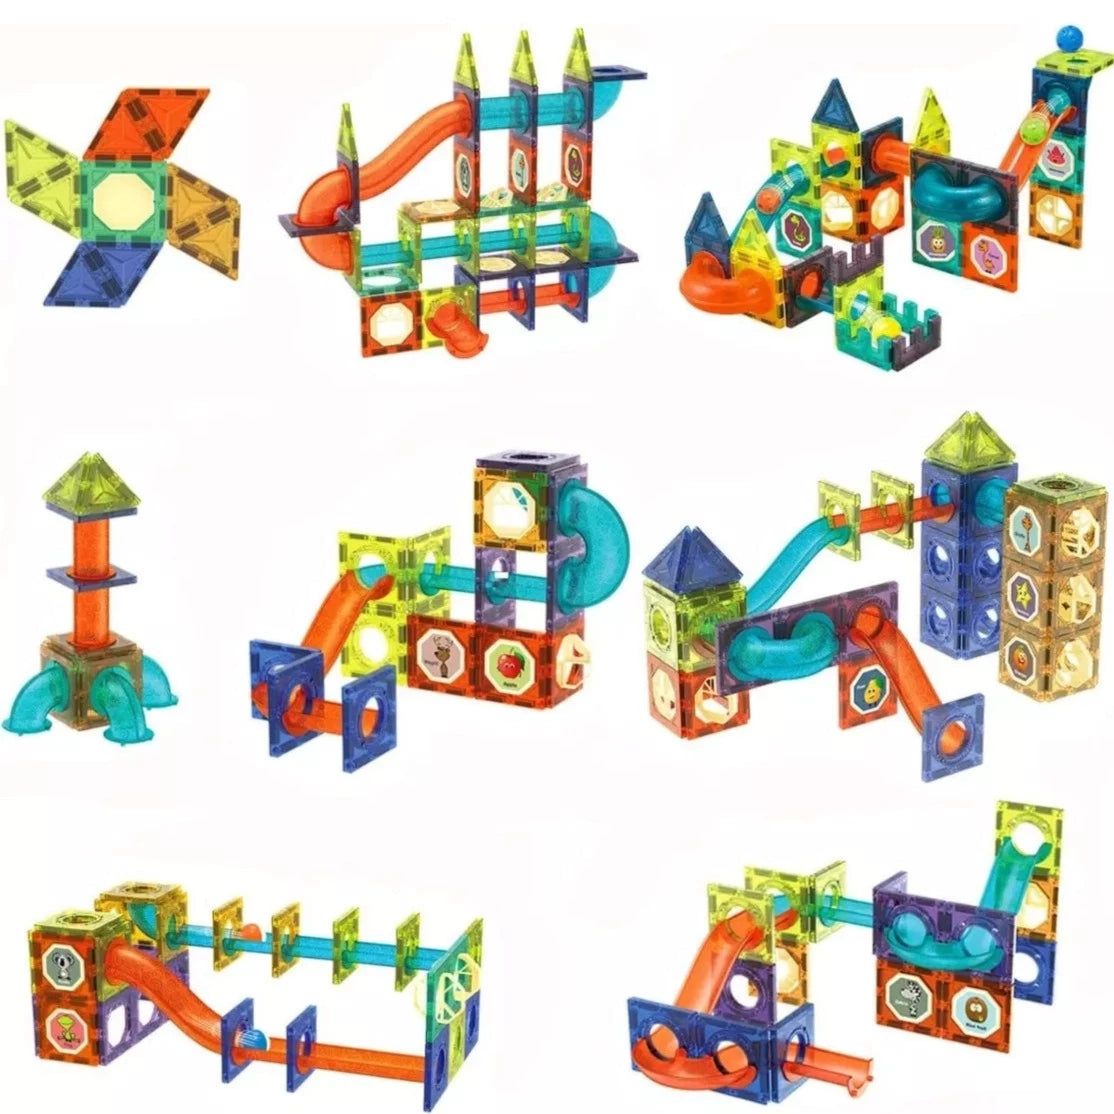 Blocs de construction magnétiques - carreaux colorés - 155 pièces